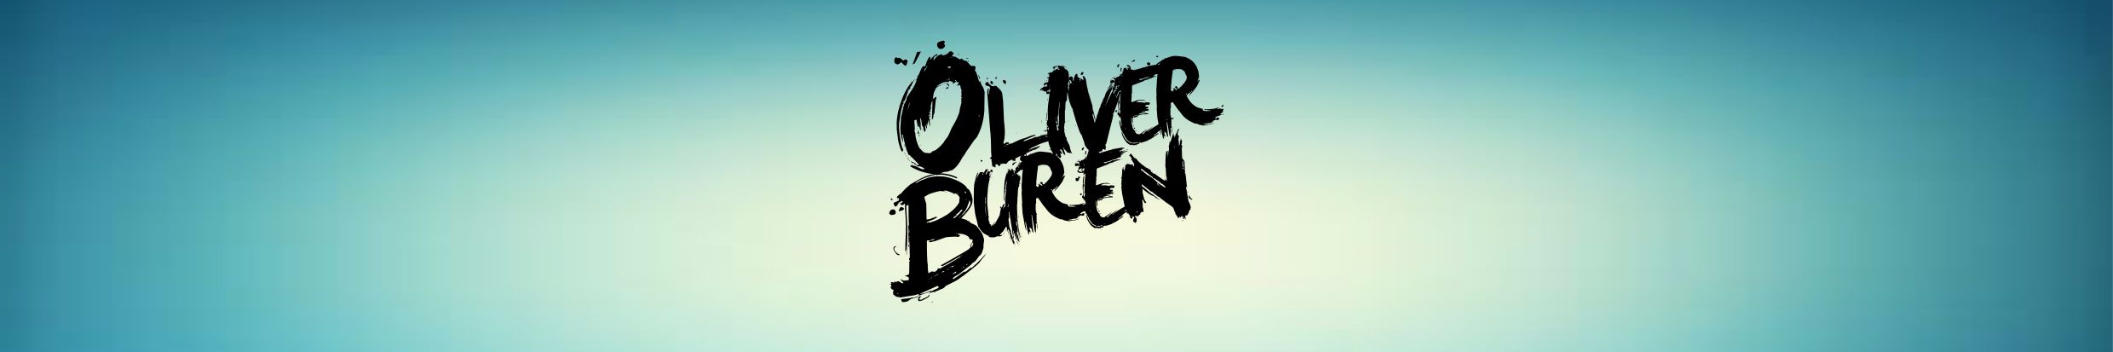 Oliver Buren